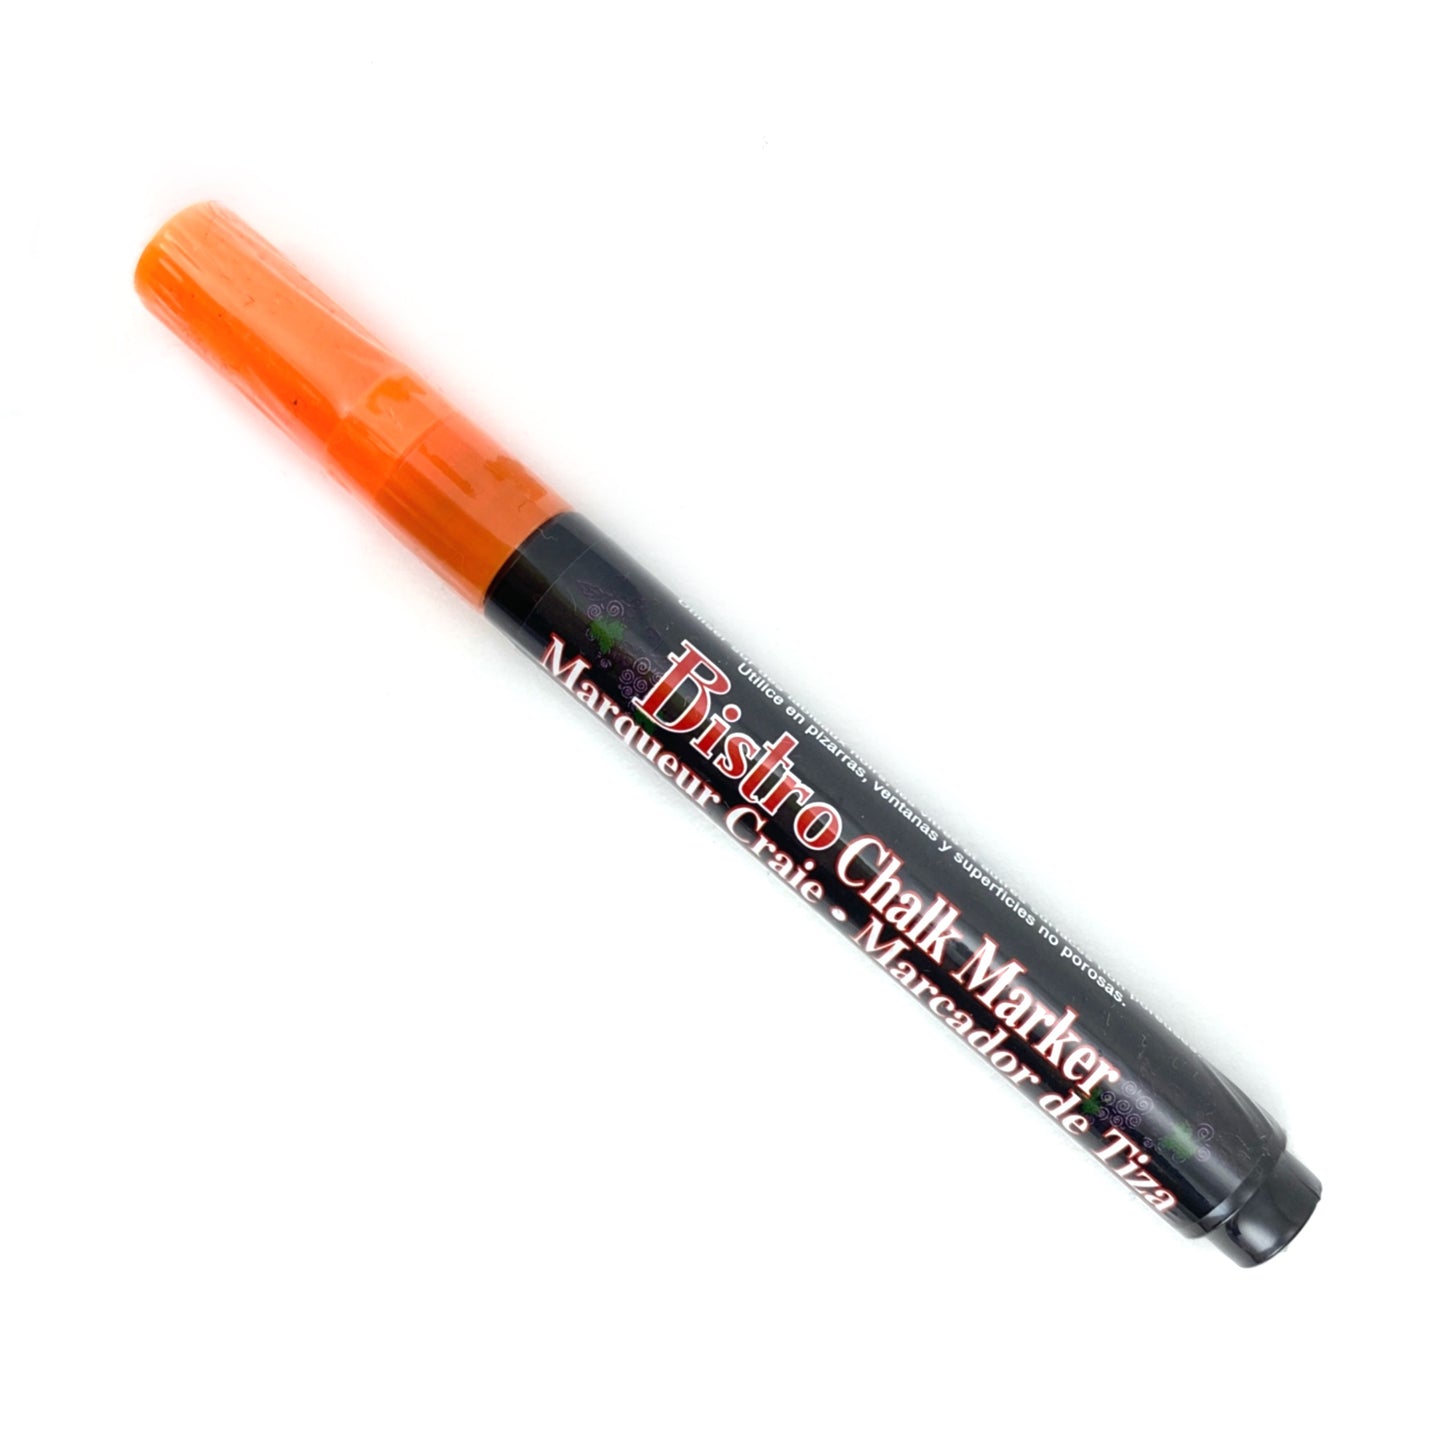 Bistro Chalk Marker - Fine (3mm) - Fluorescent Orange by Marvy Uchida - K. A. Artist Shop